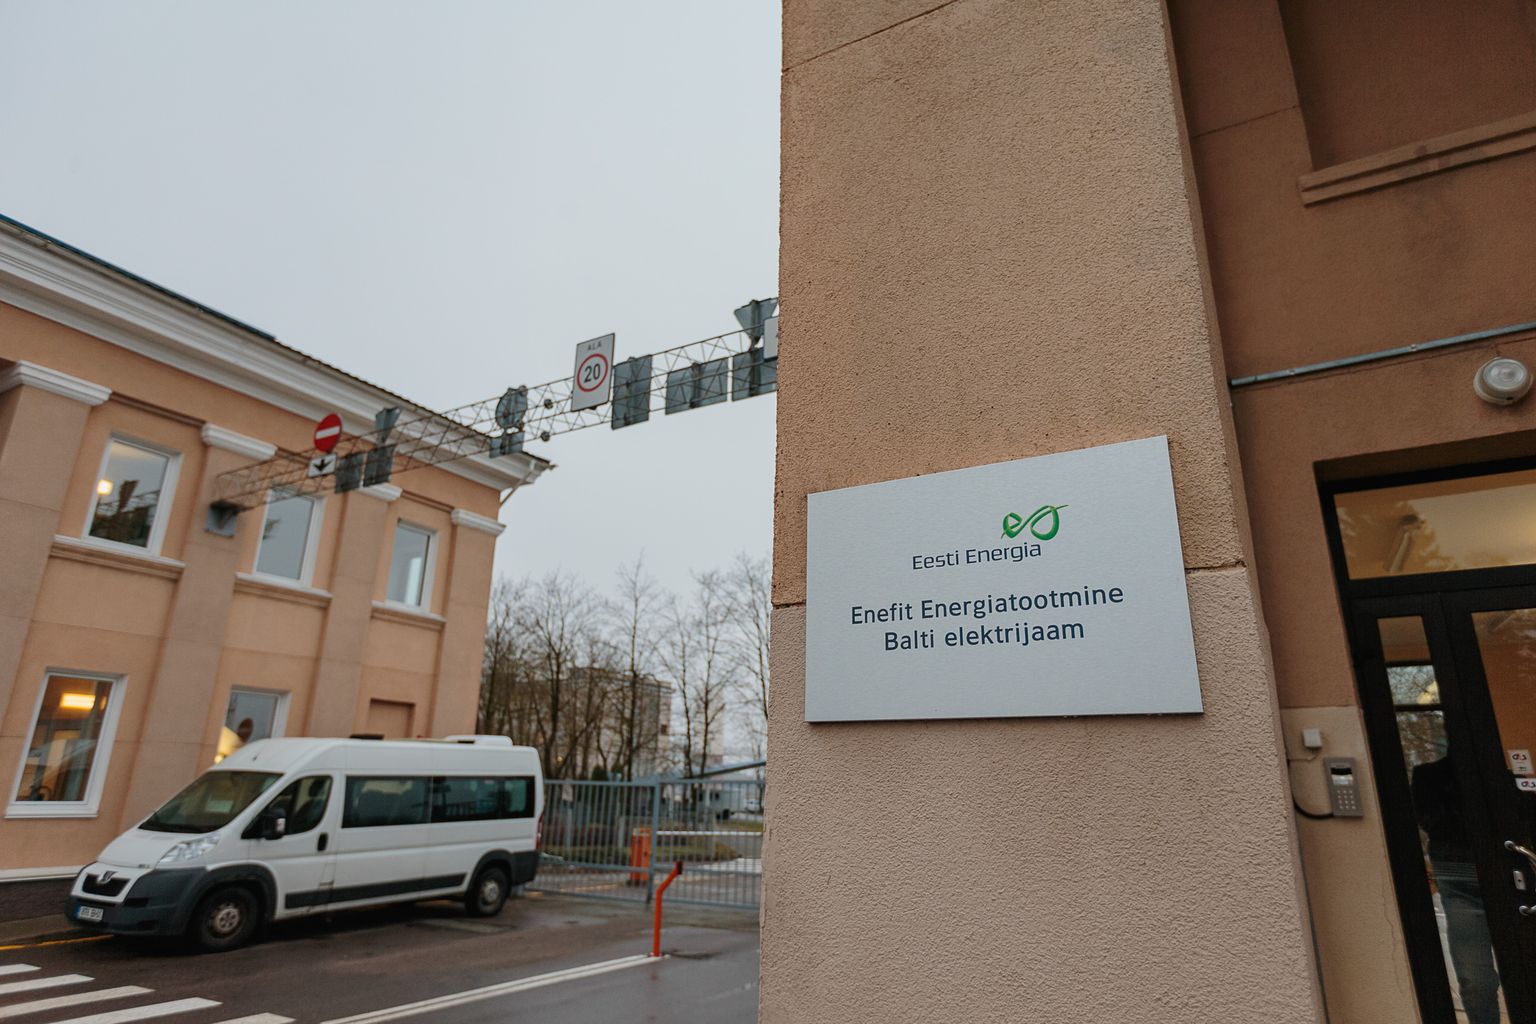 Тепло для нарвских сетей центрального отопления и горячего водоснабжения вырабатывается на ближайшей к городу Балтийской электростанции АО "Enefit Energiatootmine".